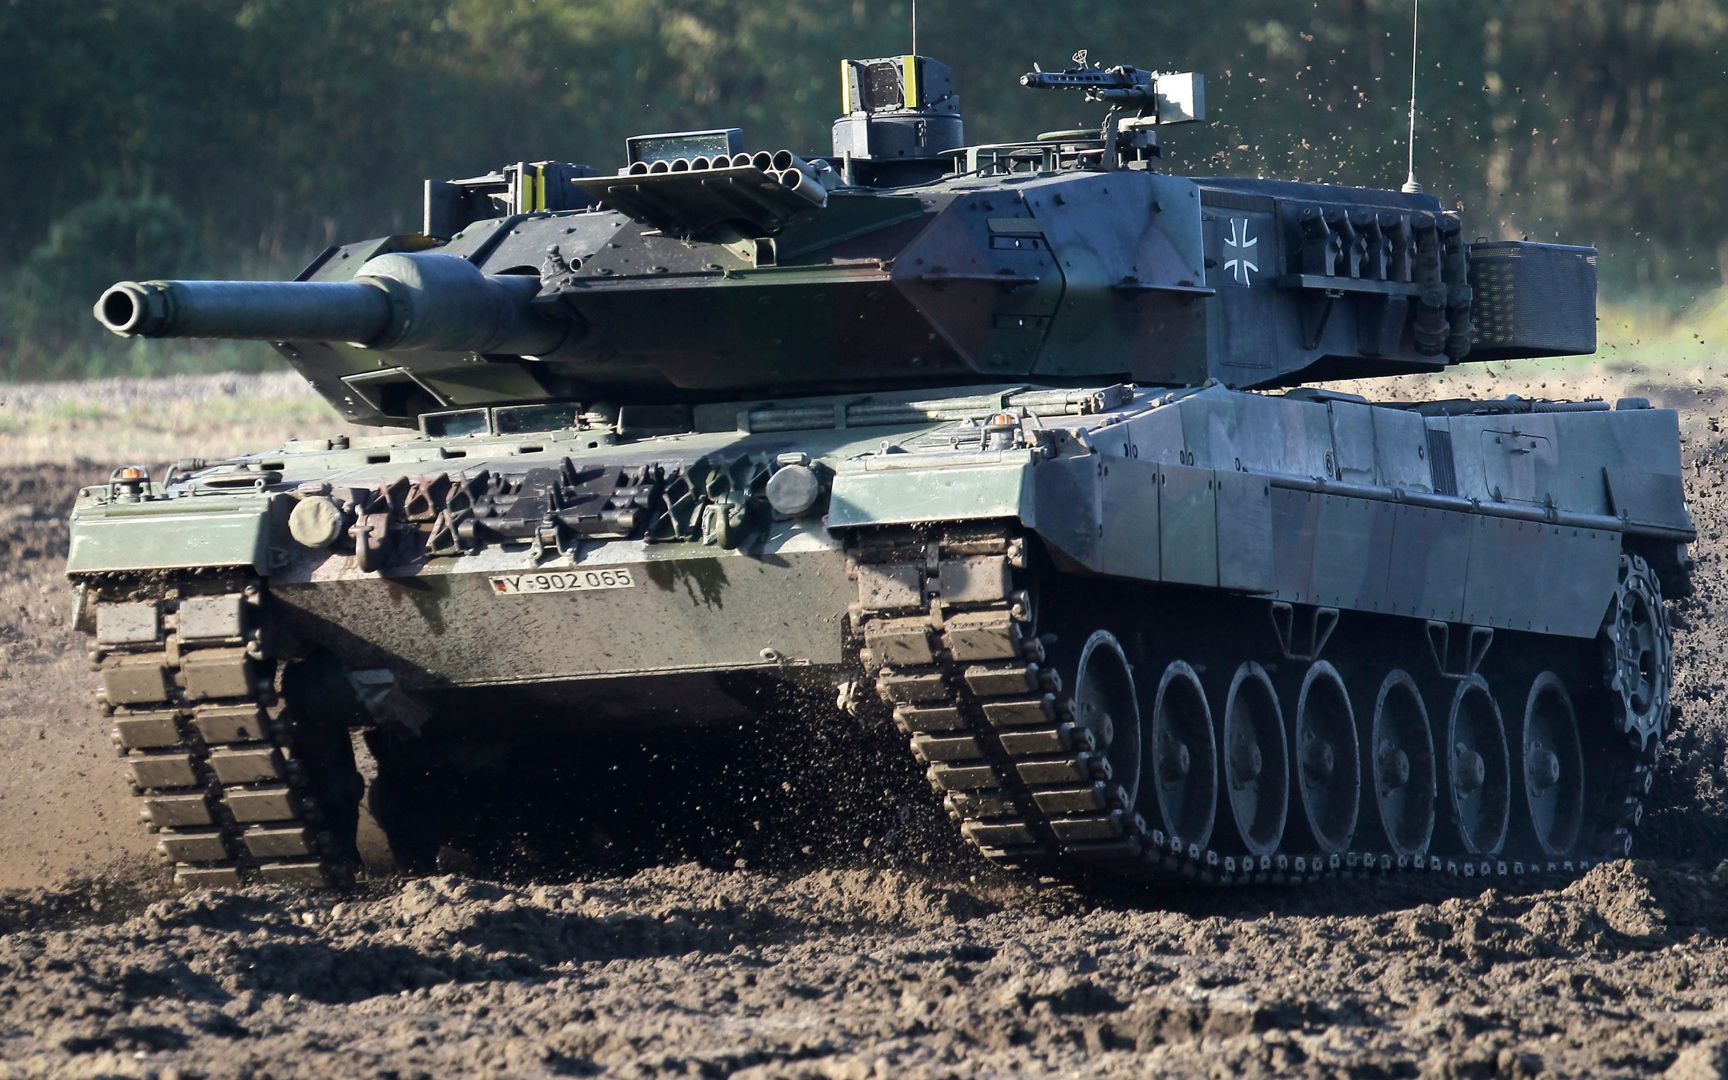 Leopard для Украины - Магда объяснил выгоду для Польши - 24 Канал